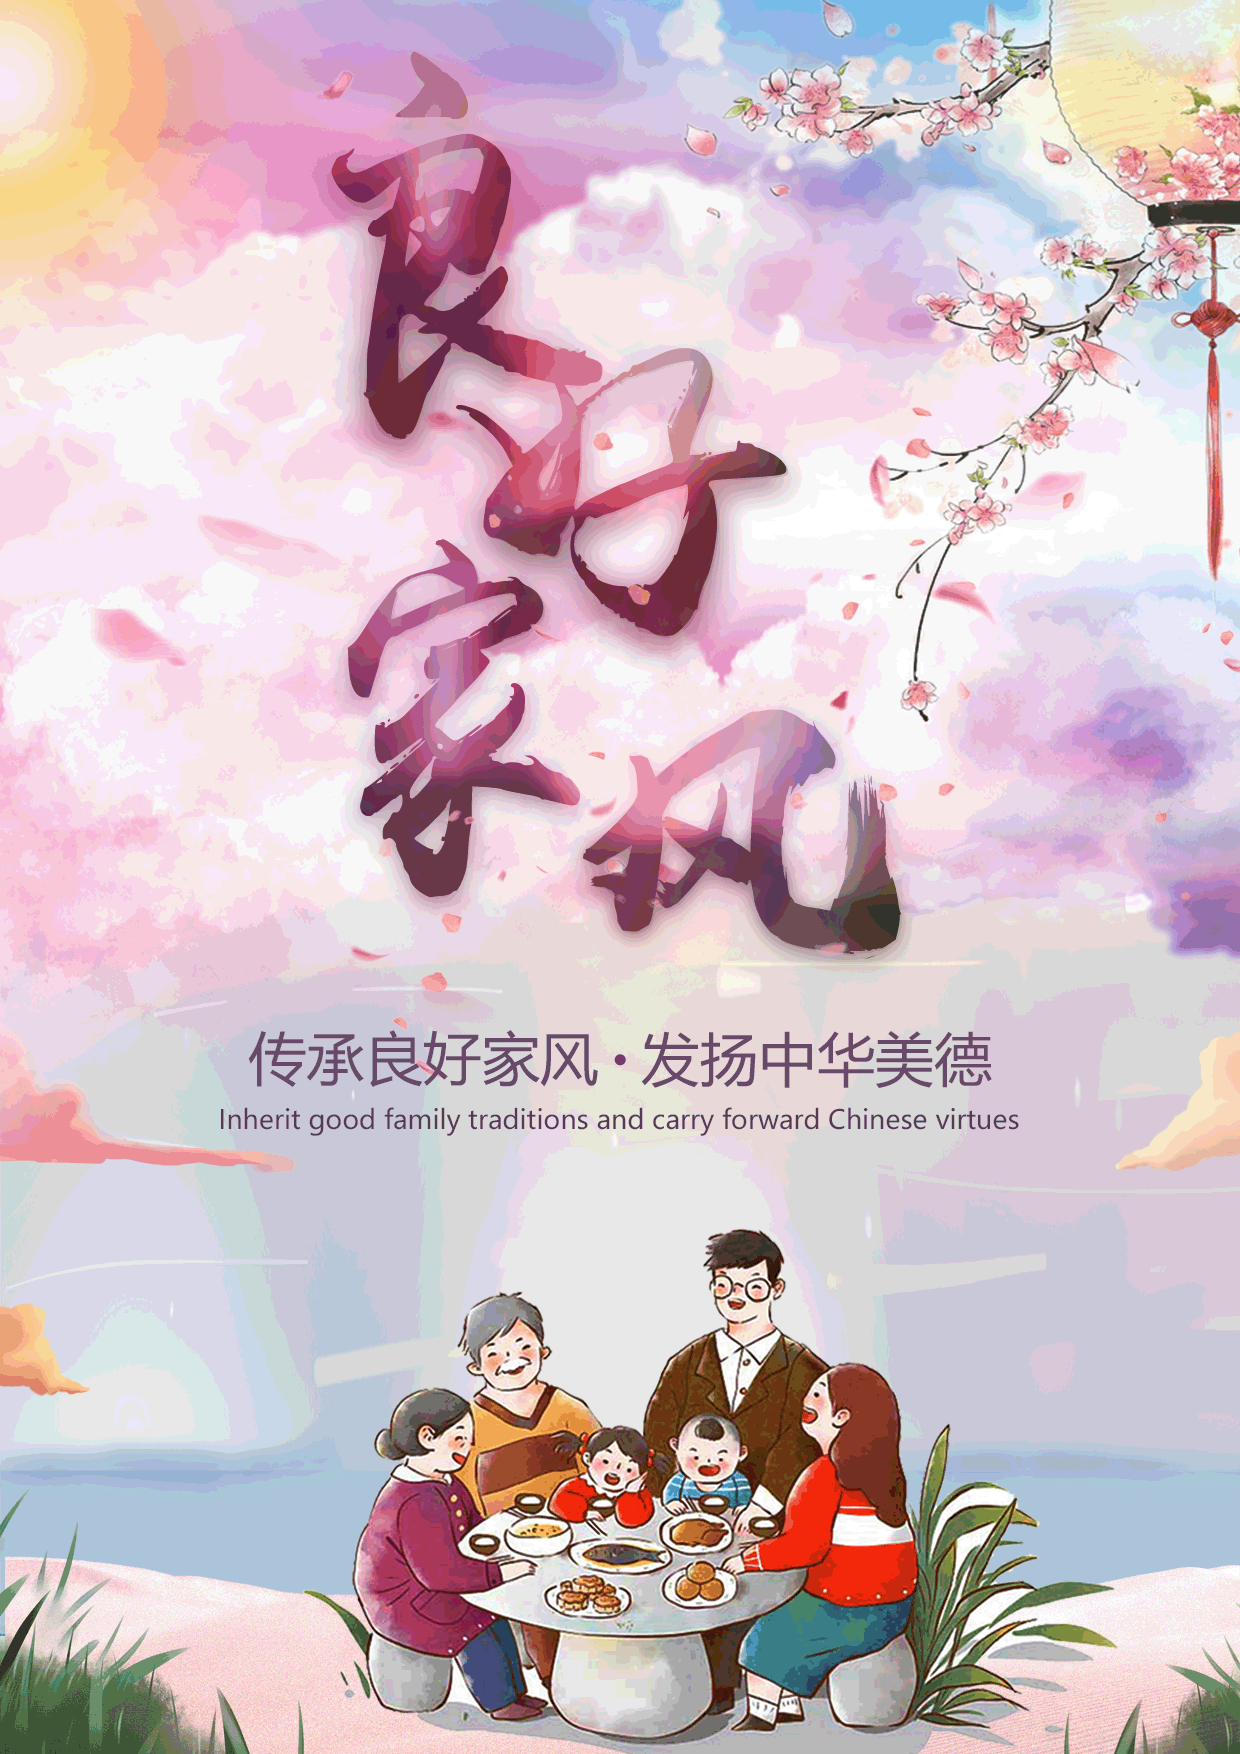 中华好家风动画宣传图片